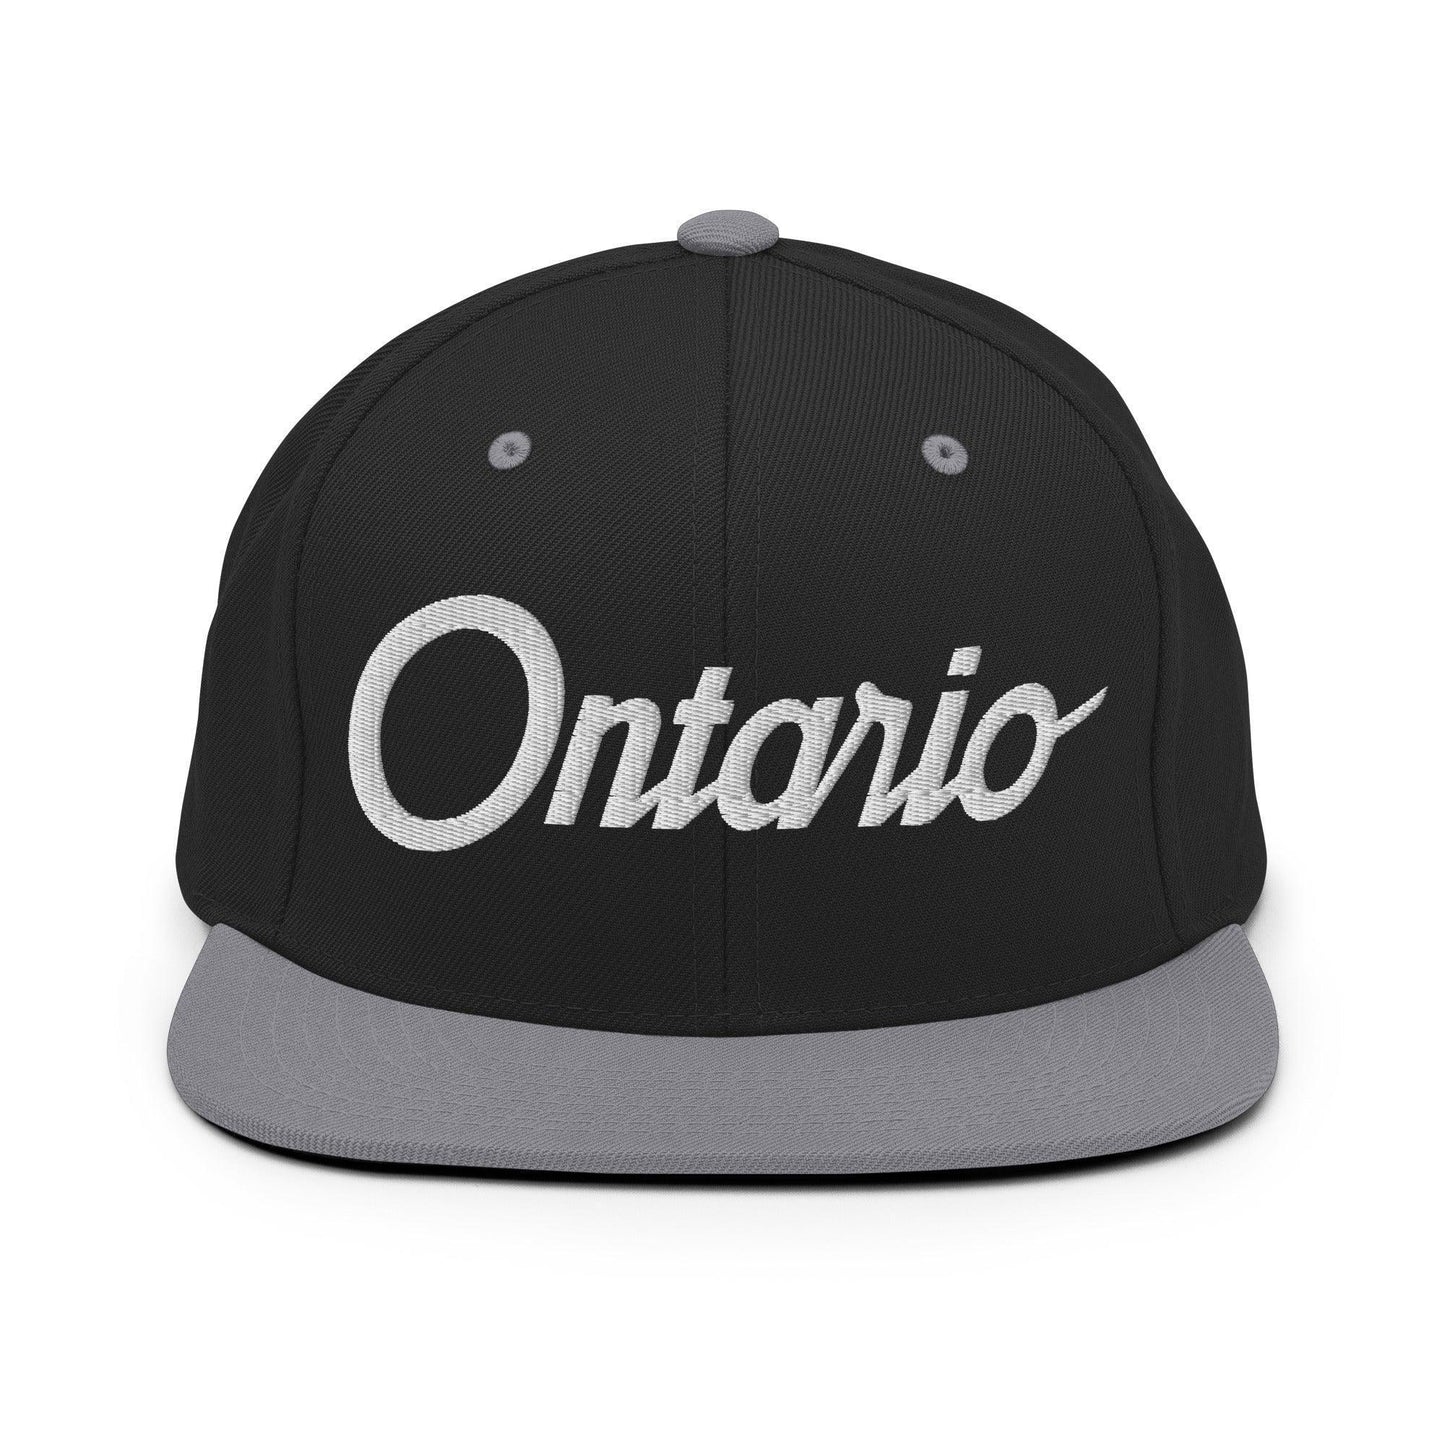 Ontario Script Snapback Hat Black/ Silver